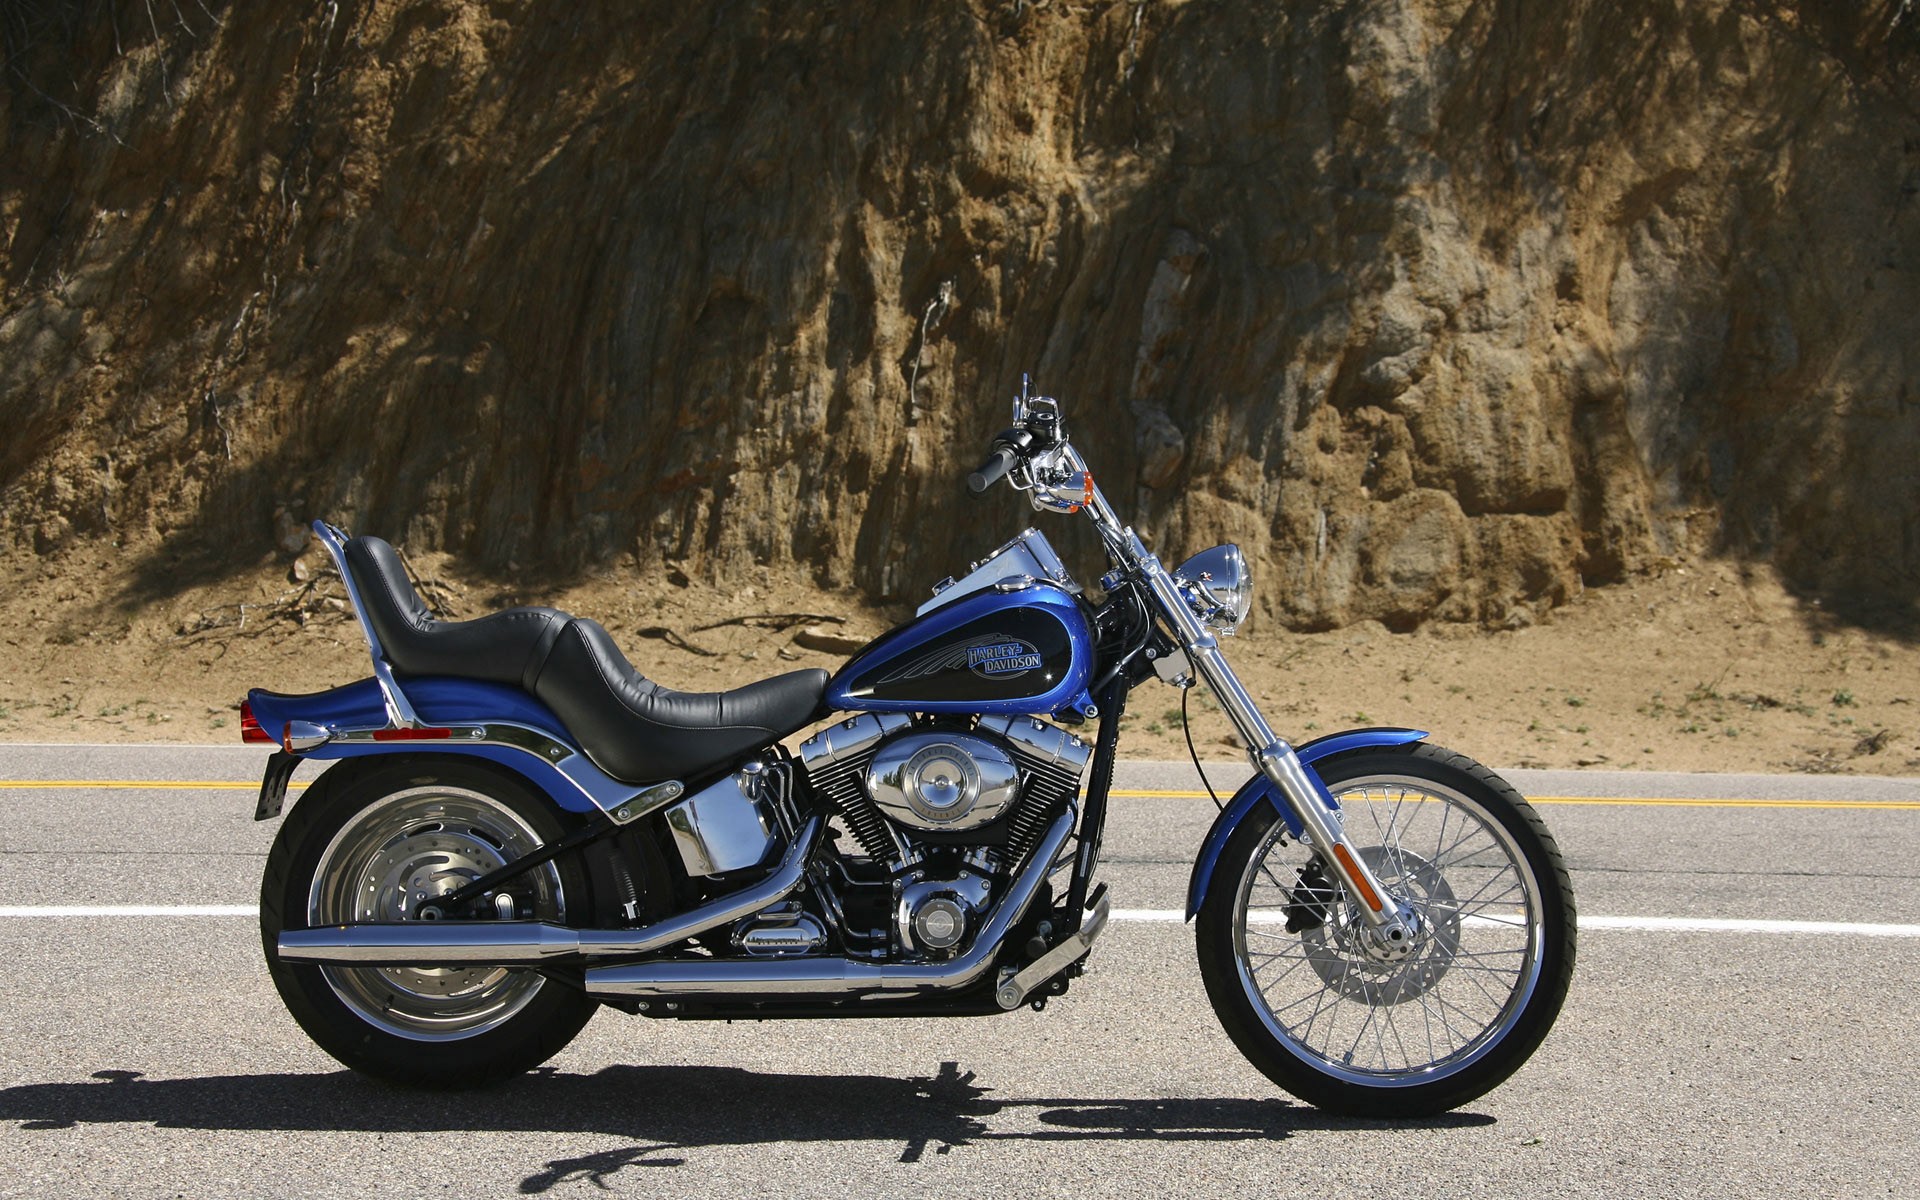 Descarga gratuita de fondo de pantalla para móvil de Harley Davidson, Motocicletas, Motocicleta, Bicicleta, Vehículos.